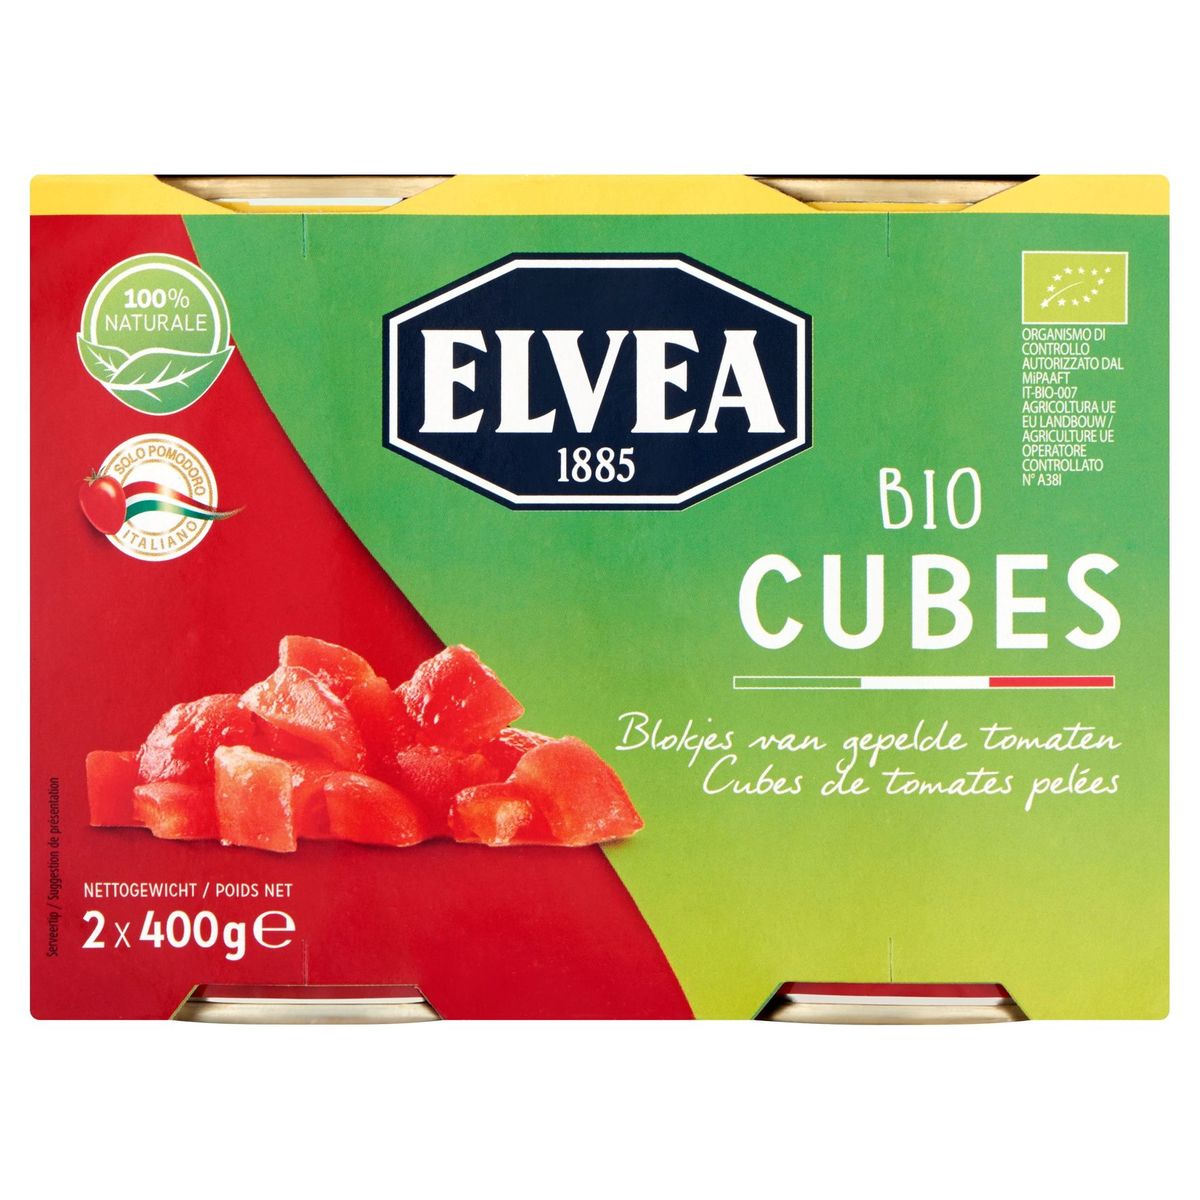 Elvea Bio Cubes Blokjes van Gepelde Tomaten 2 x 400 g